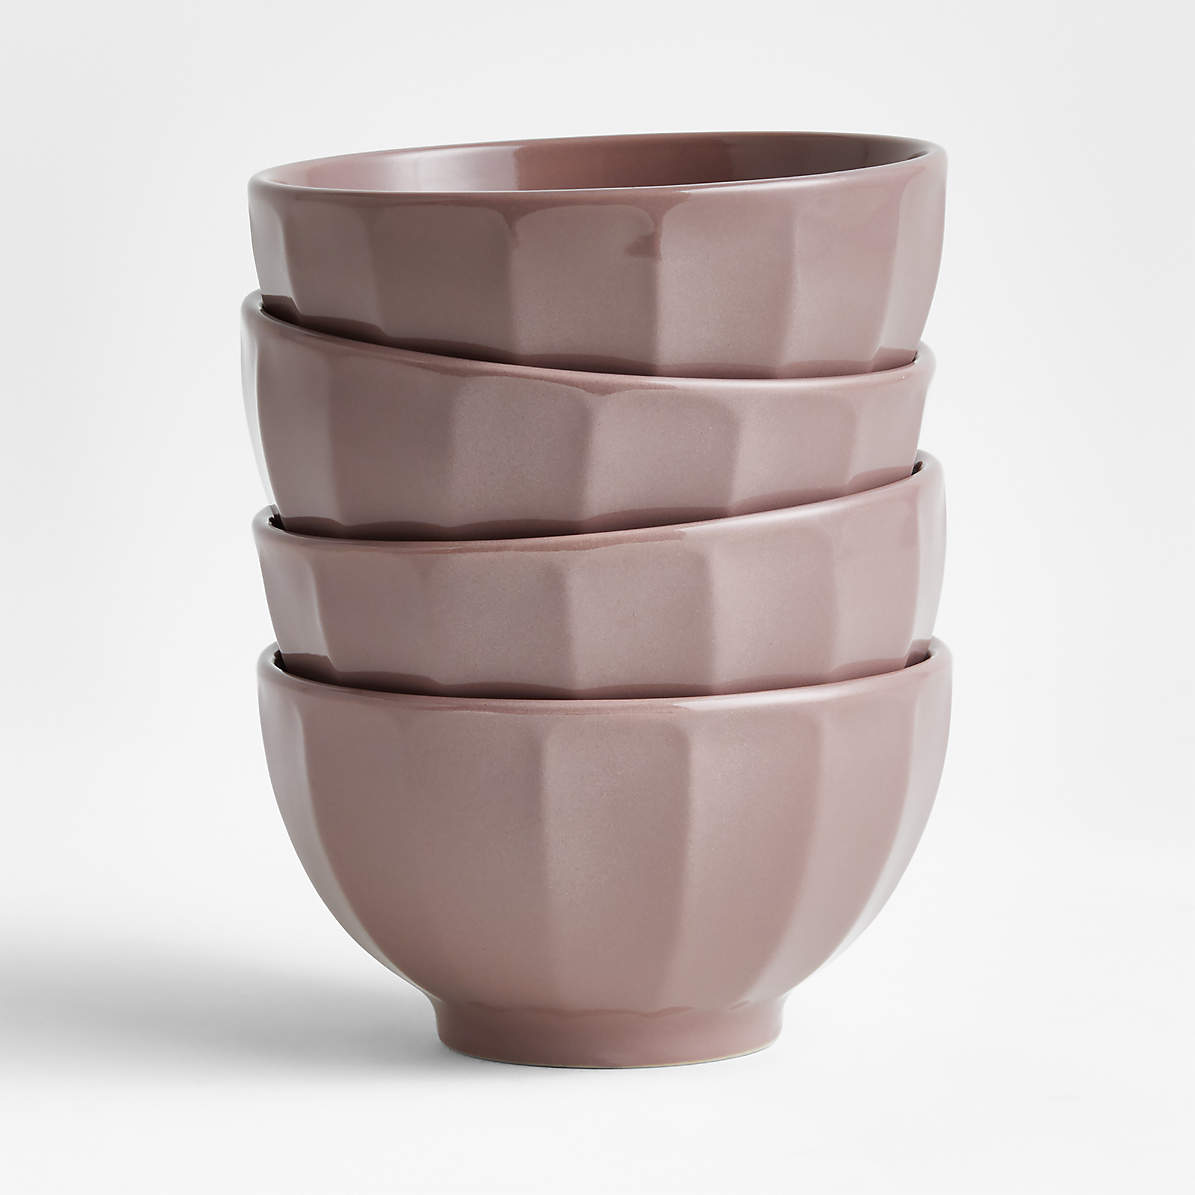 Cafe Desert Pink Cereal Bowls, Set of 4 + Reviews